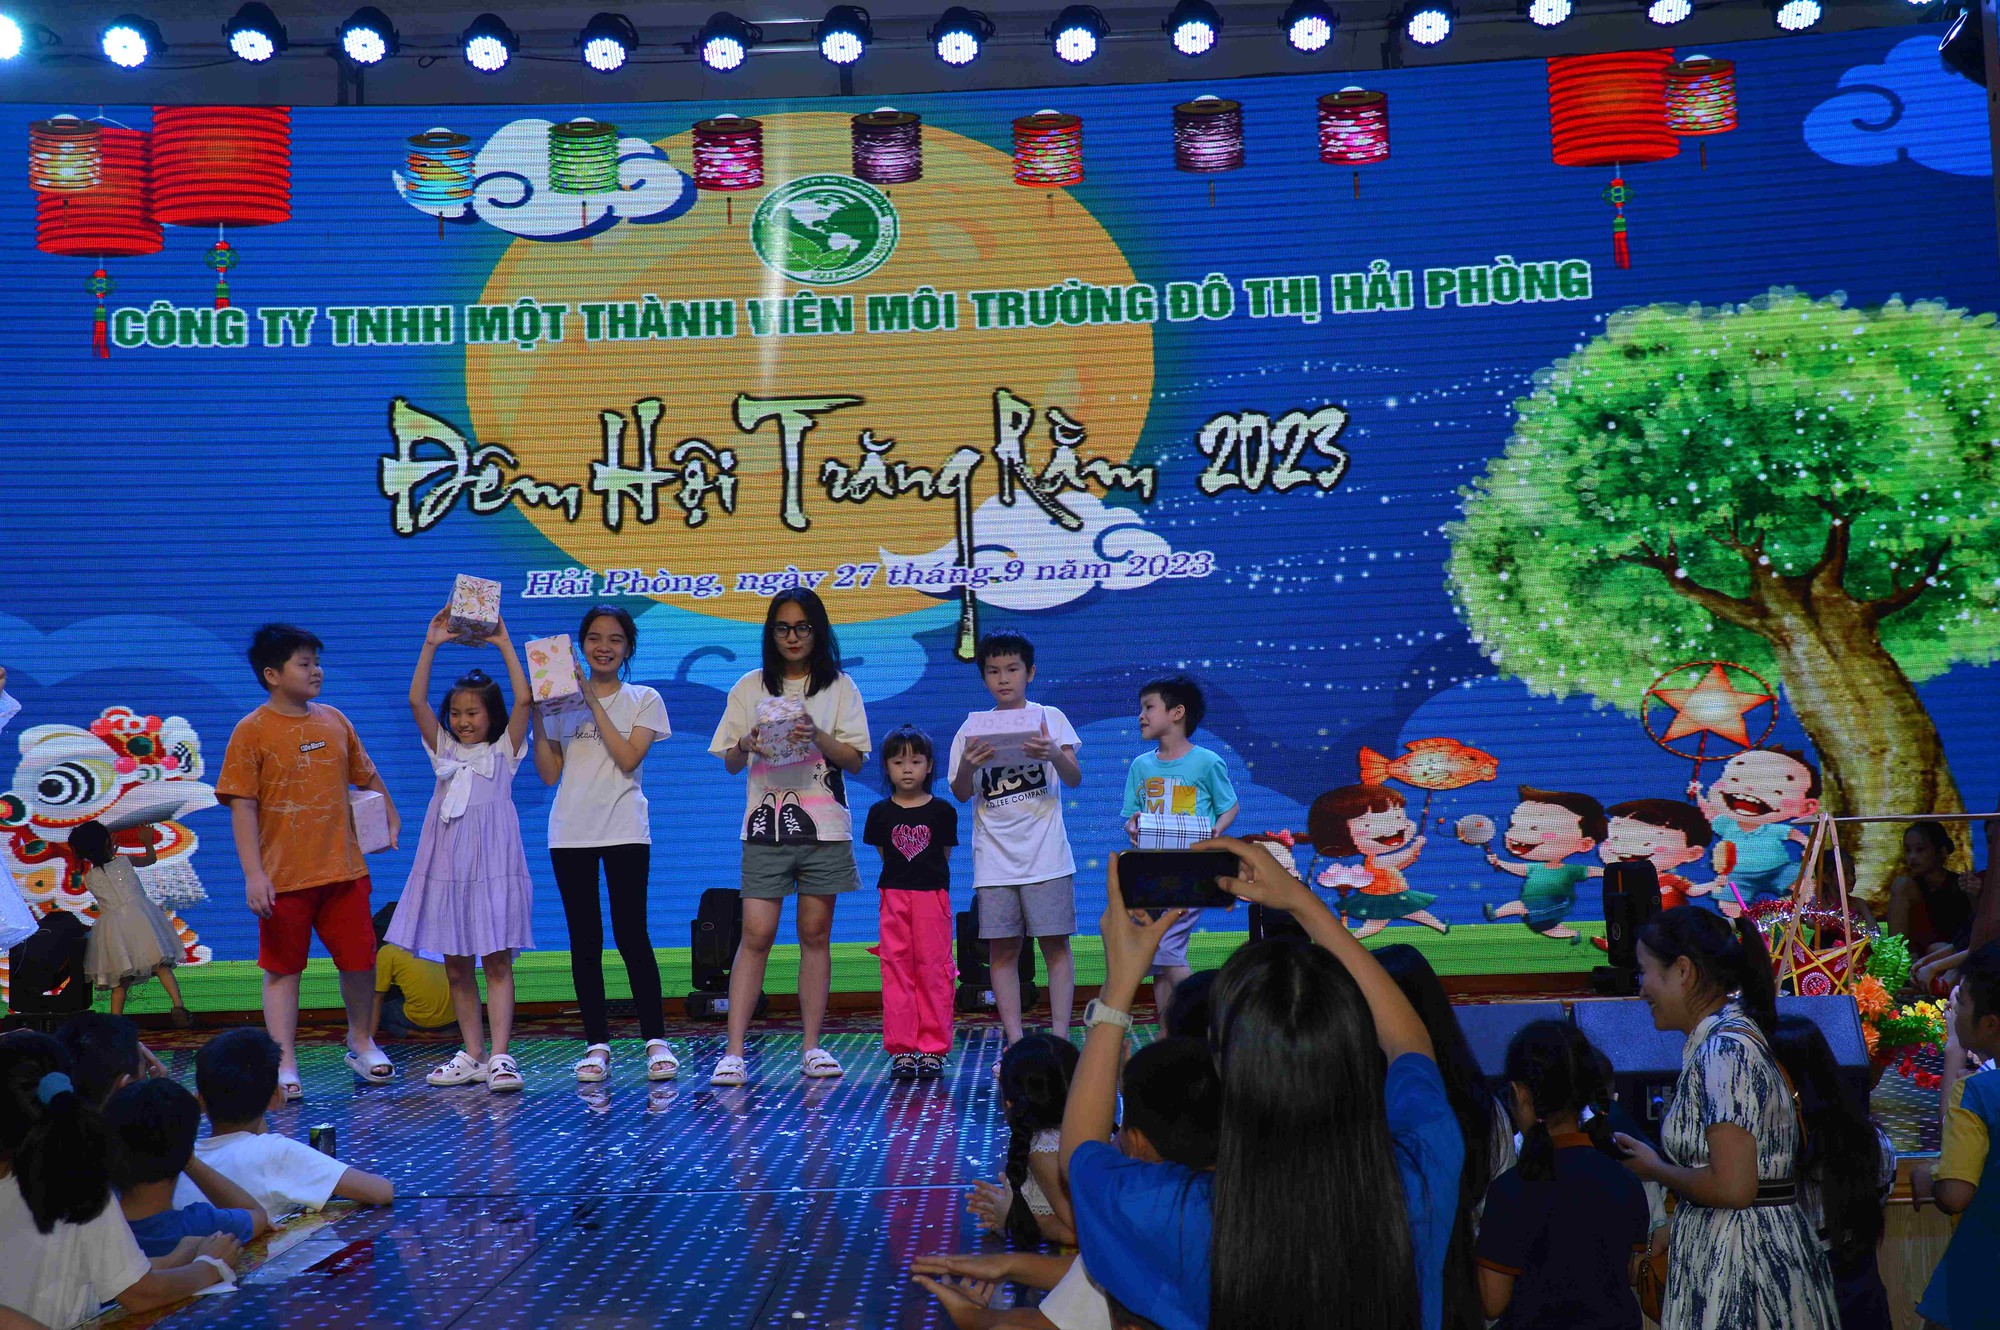 Công ty TNHH MTV môi trường đô thị Hải Phòng tổ chức vui Tết Trung thu cho hơn 900 em nhỏ - Ảnh 2.